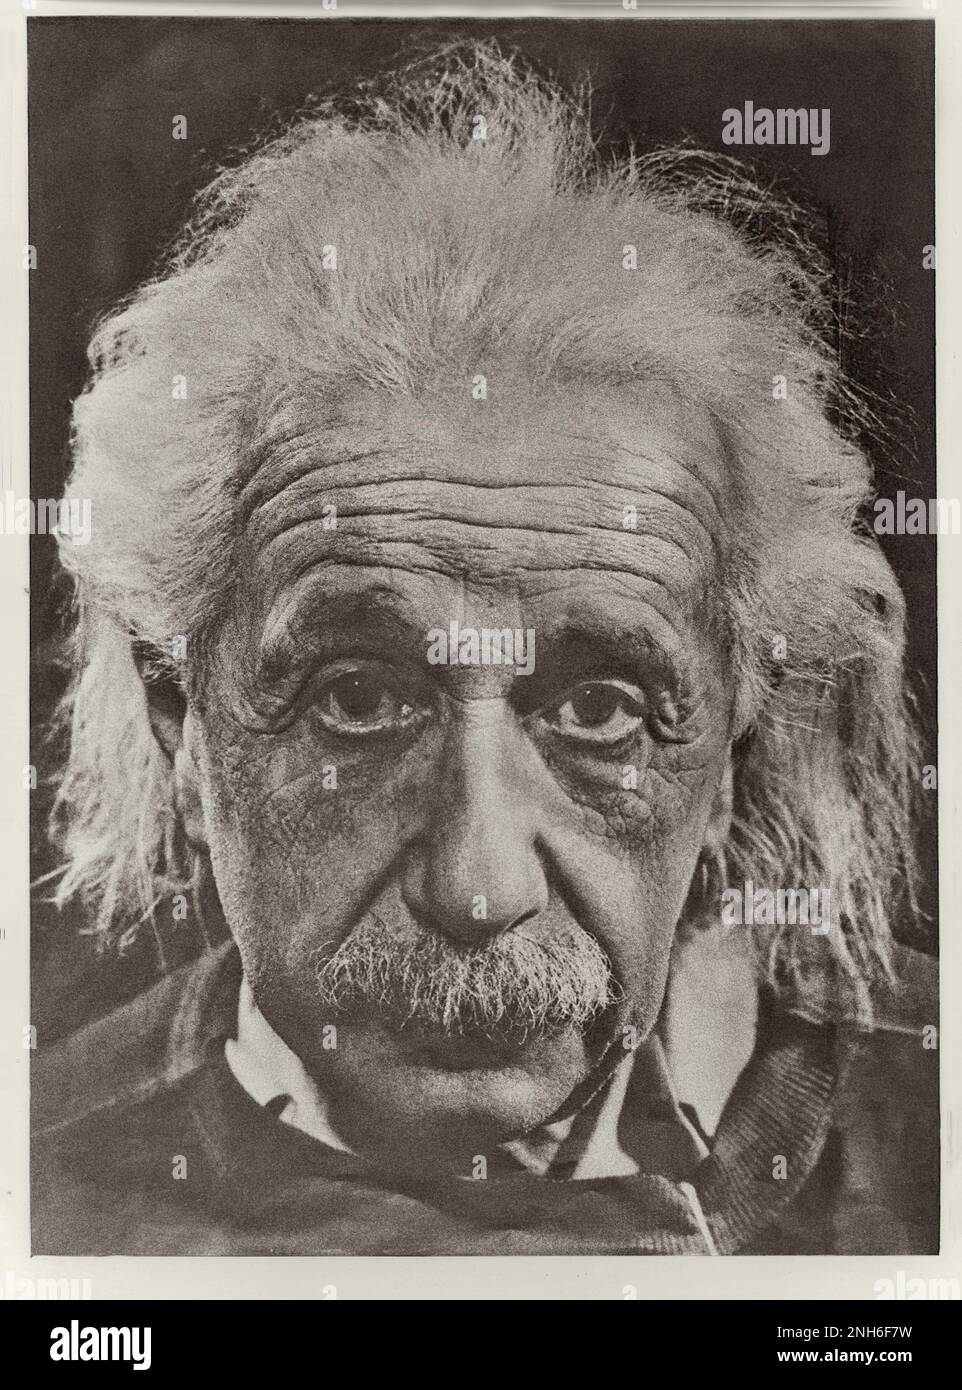 Porträt von Albert Einstein. Albert Einstein (1879-1955) war ein in Deutschland geborener theoretischer Physiker, der die Relativitätstheorie entwickelte, eine der beiden Säulen der modernen Physik (neben der Quantenmechanik). Seine Arbeit ist auch für ihren Einfluss auf die Philosophie der Wissenschaft bekannt. Er ist in der Öffentlichkeit am bekanntesten für seine Masse-Energie-Äquivalenzformel E = mc2, die als „die berühmteste Gleichung der Welt“ bezeichnet wurde. 1921 erhielt er den Physik-Nobelpreis für seine Dienste der theoretischen Physik und insbesondere für seine Entdeckung des Gesetzes des photoelektrischen Effekts, einer zentralen St. Stockfoto